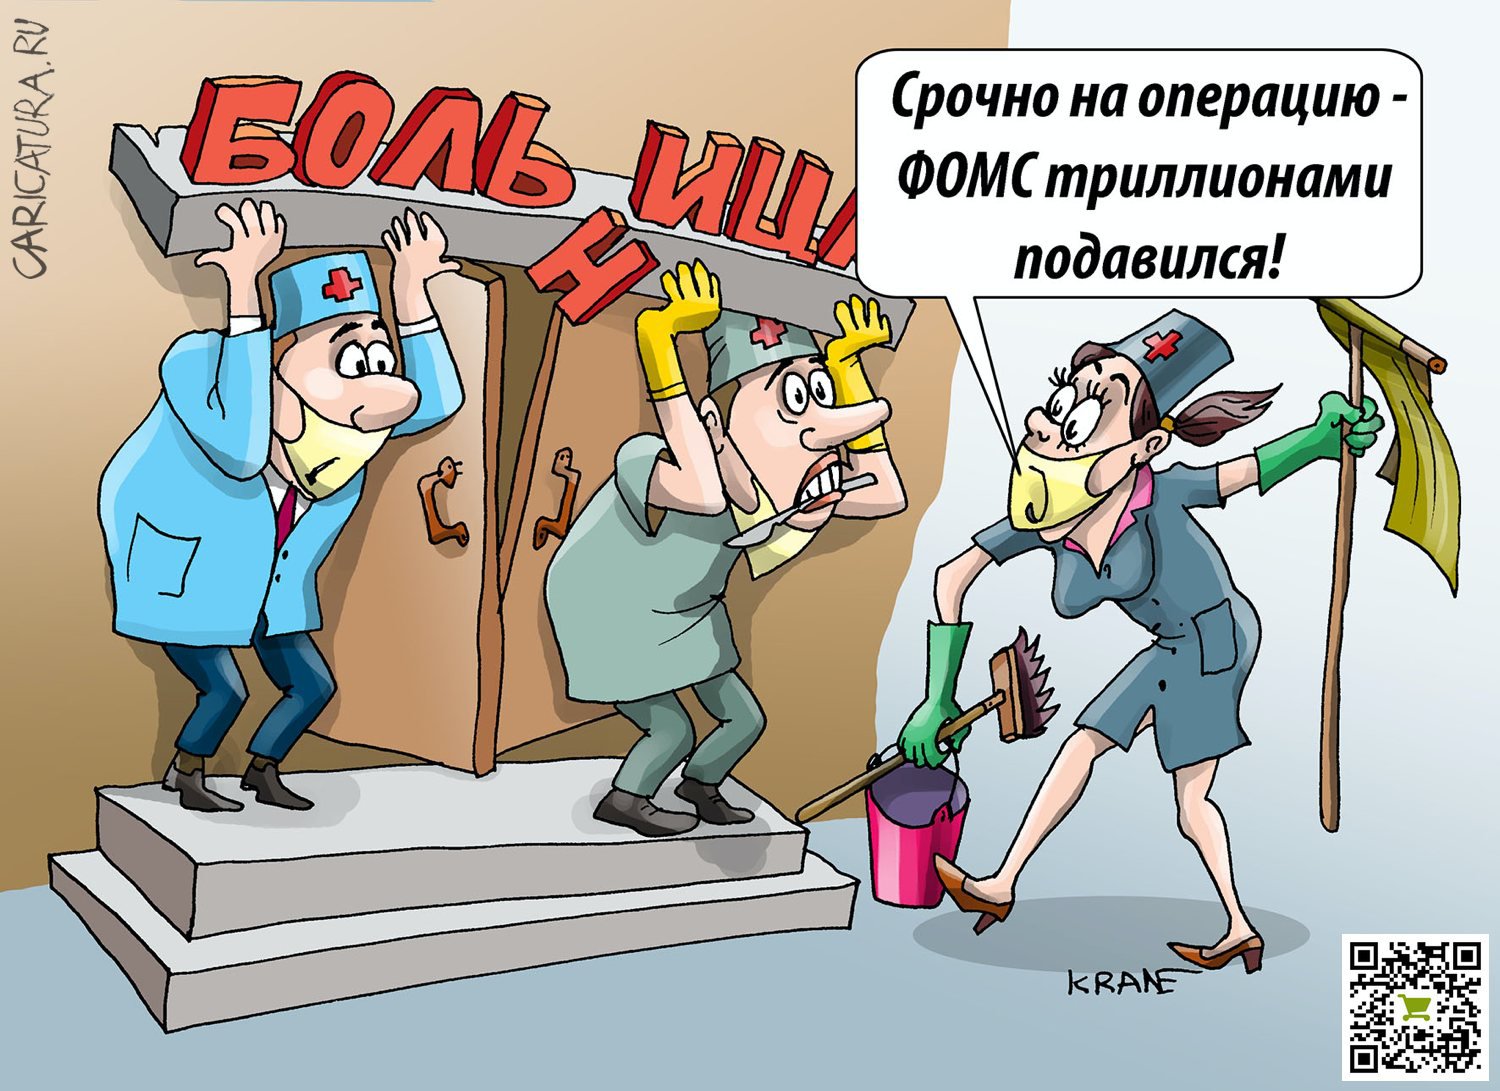 Карикатура "Фонды: от отката до отката", Евгений Кран